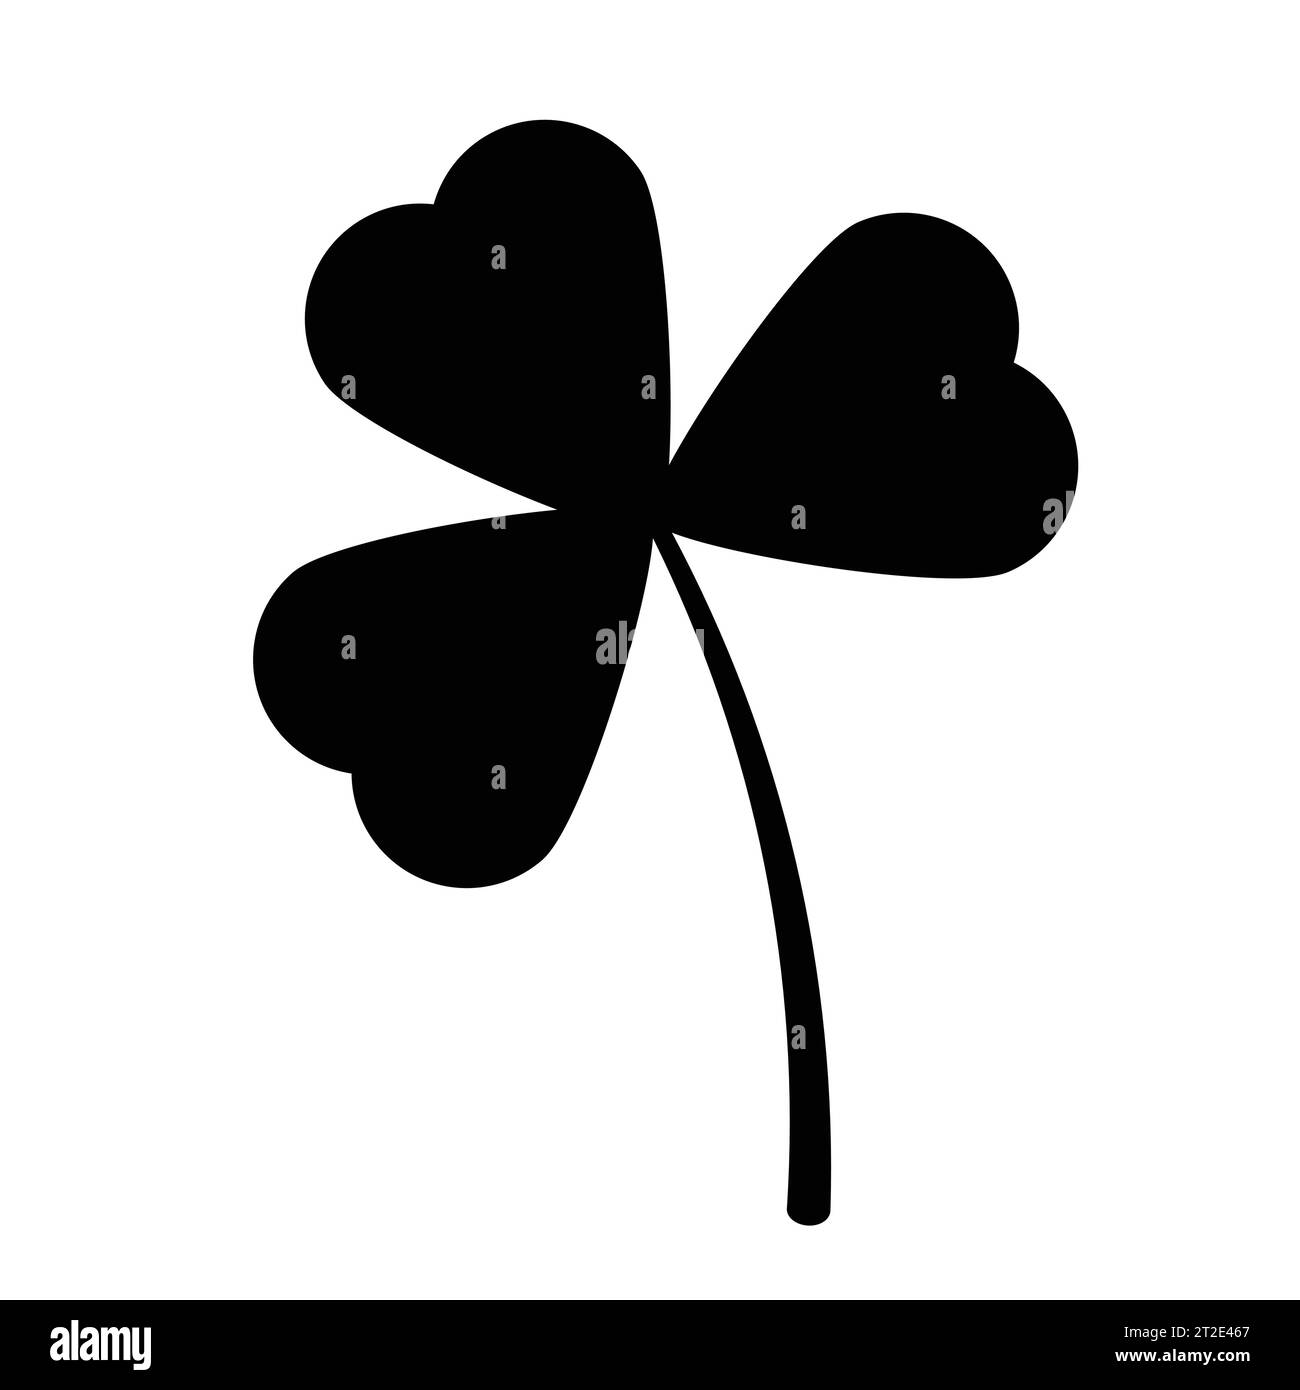 Schwarze Silhouetten von Kleeblatt. Symbol des St. Patricks-Tages, Symbol des Kleeblattes. Vektorillustration isoliert auf weißem Hintergrund. Stock Vektor